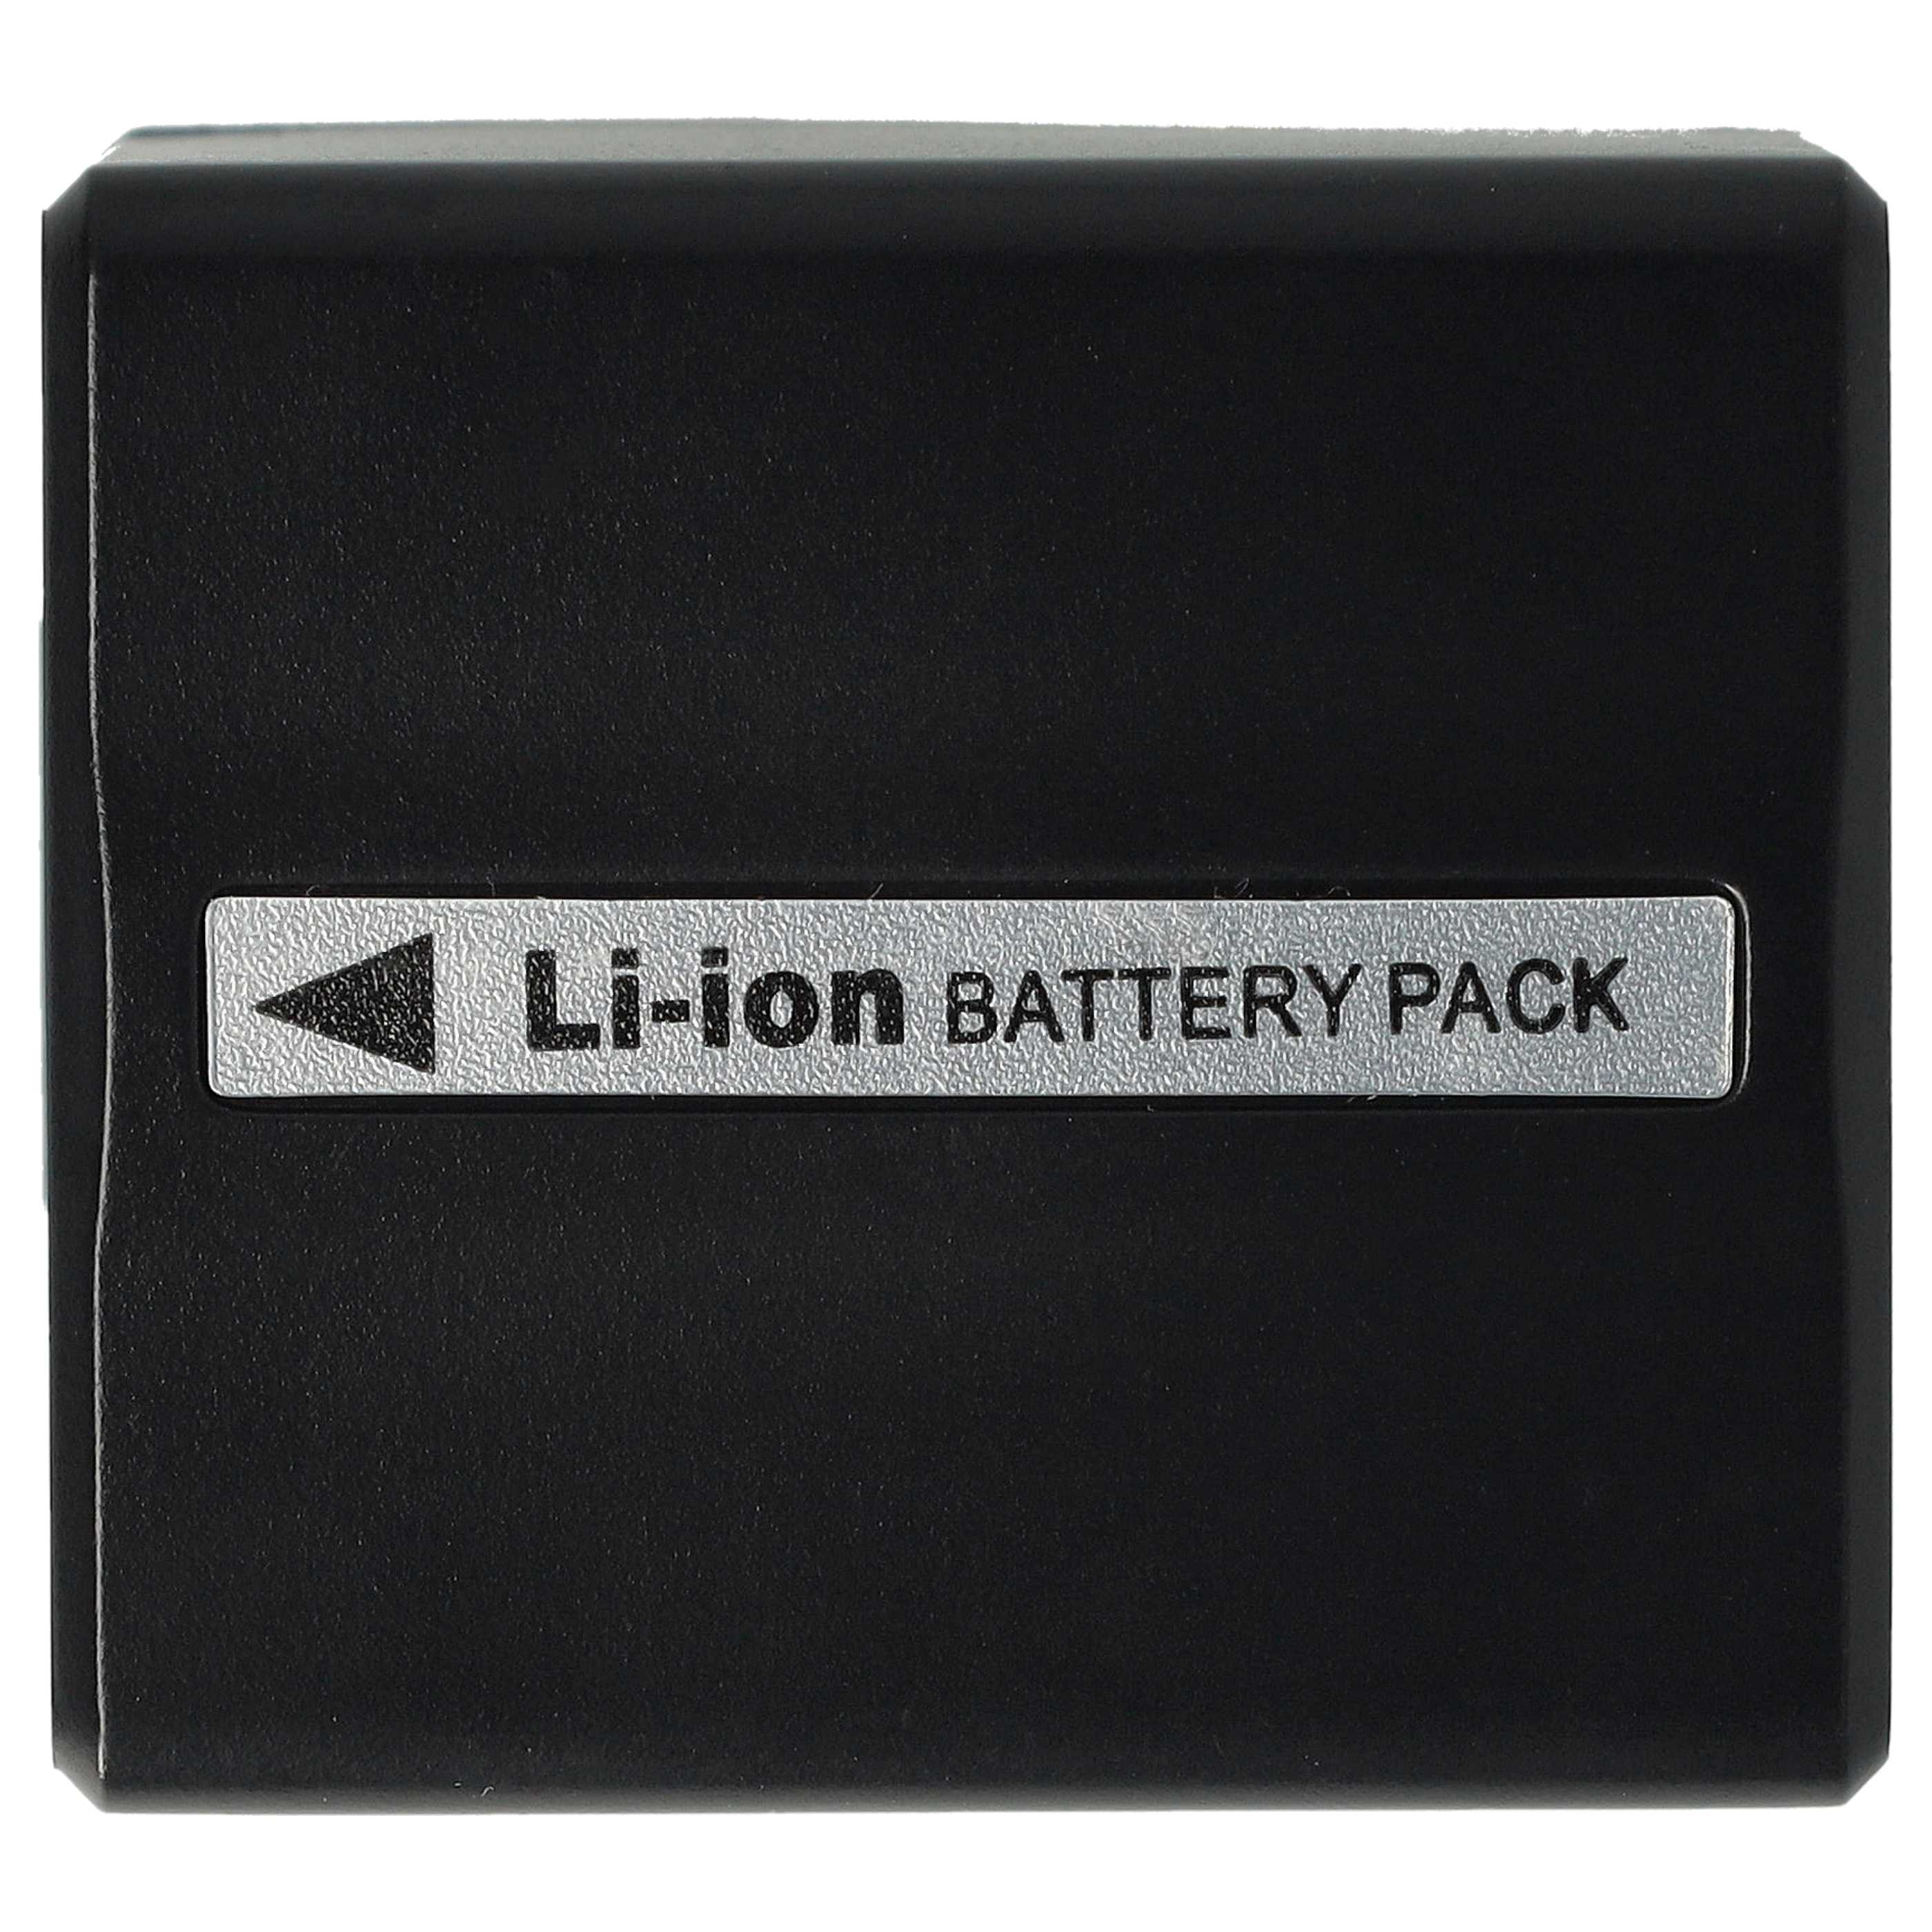 Batterie remplace Hitachi DZ-BP14s, DZ-BP07s, DZ-BP21s pour appareil photo - 1100mAh 7,2V Li-ion